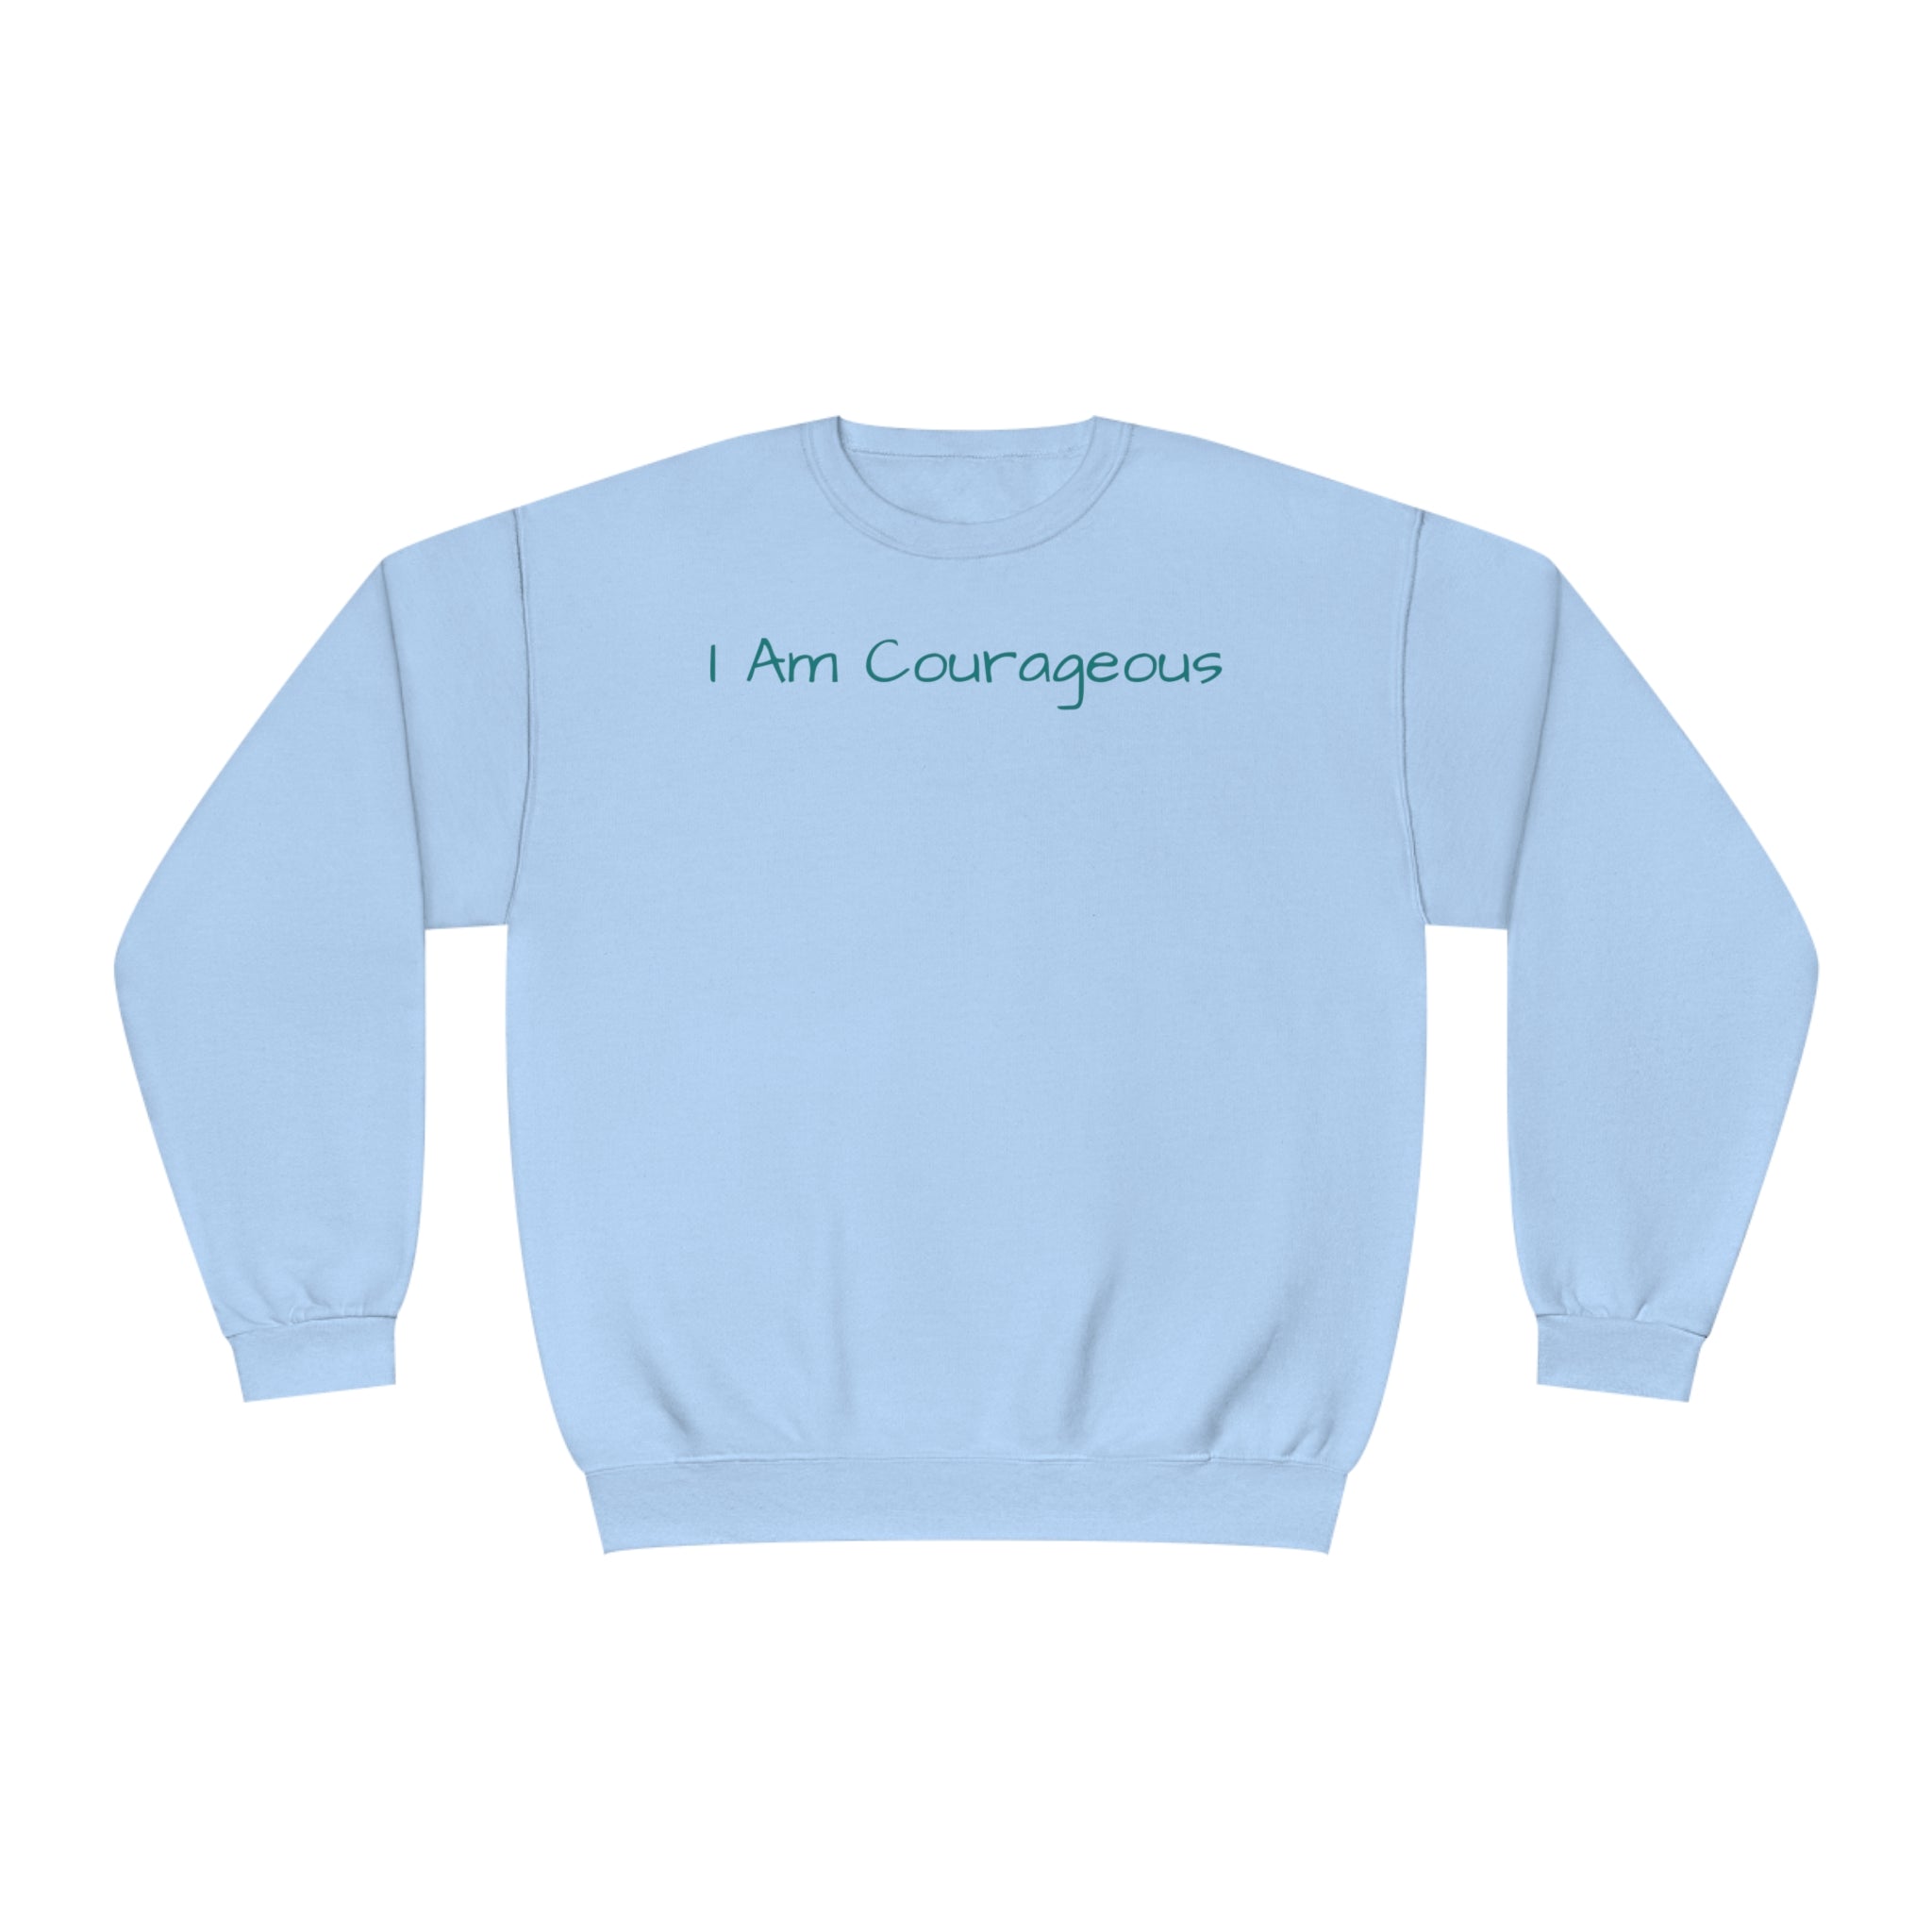 I Am Courageous Fleece: Comfort & Empowerment Sandstone Comfy Sweater Cozy Sweatshirt Crewneck Sweatshirt Fleece Pullover Graphic Sweatshirt Men's Sweatshirt Streatwear Sweatshirt Warm Outerwear Women's Sweatshirt Sweatshirt 6500452285724482247_2048 Printify